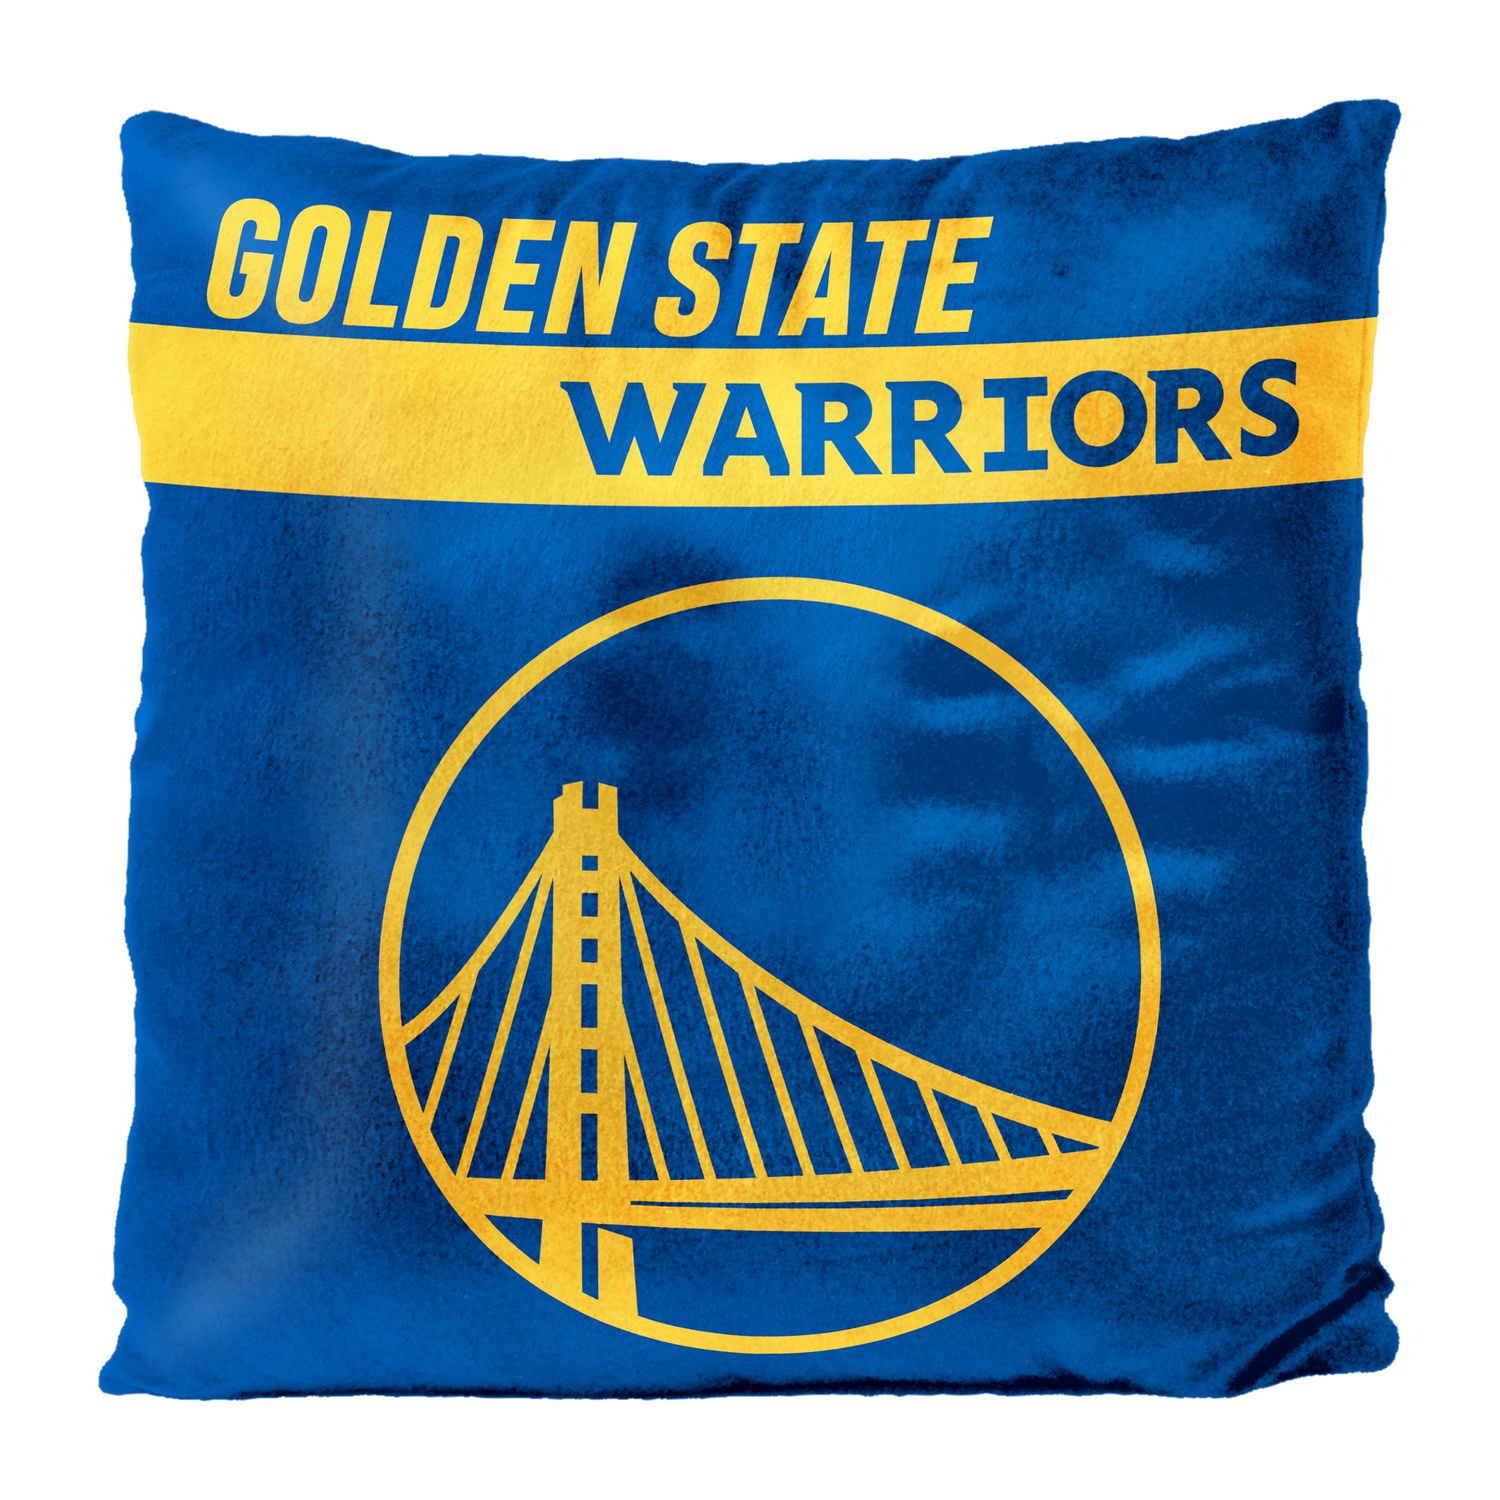 Golden State Warriors Throw Pillow